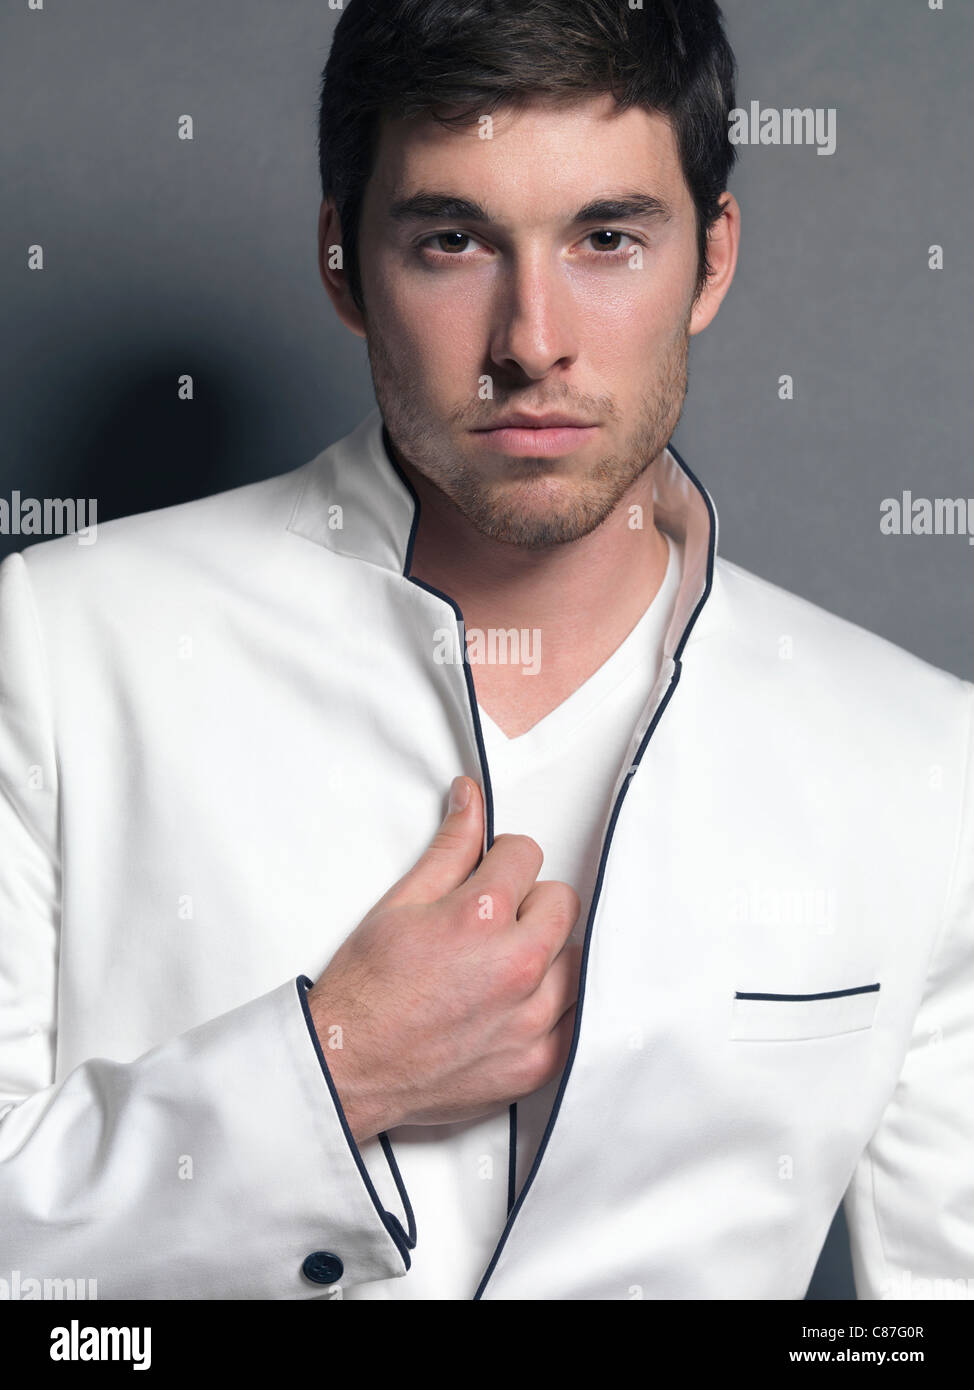 Licence et tirages sur MaximImages.com - Portrait d'un jeune homme portant un blazer blanc élégant Banque D'Images